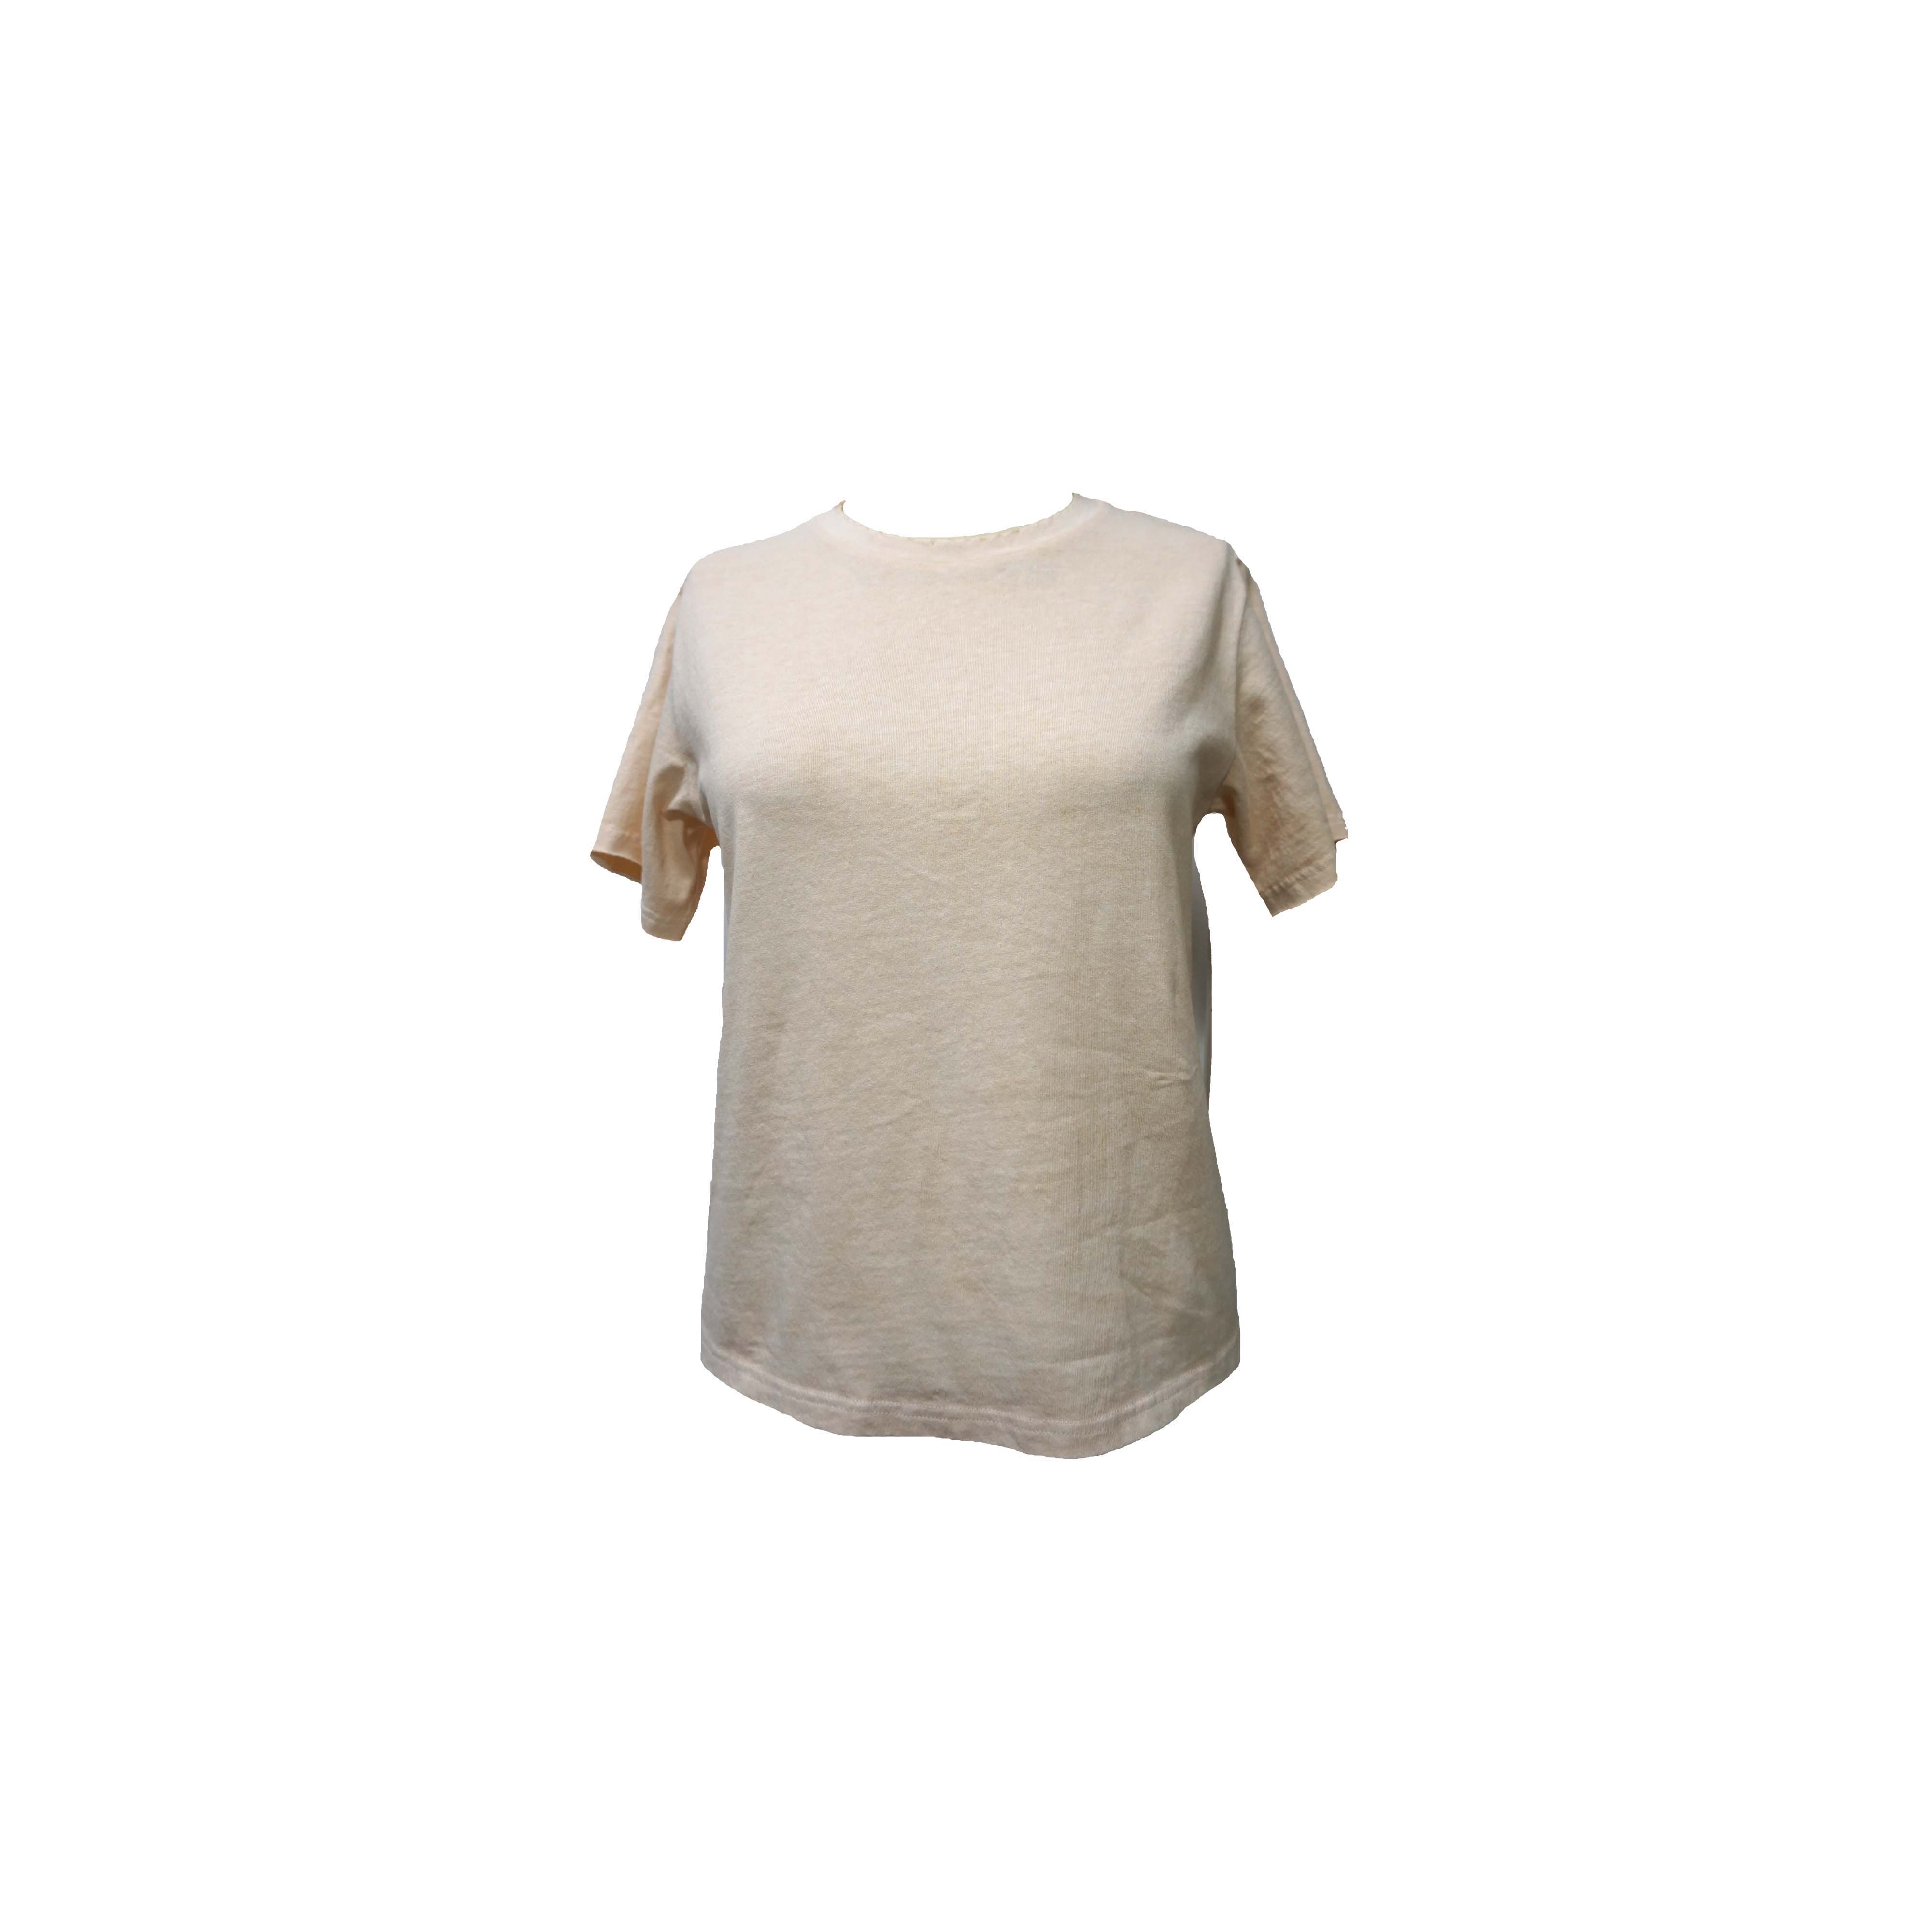 Einfach bedrucktes T-Shirt aus Baumwolle